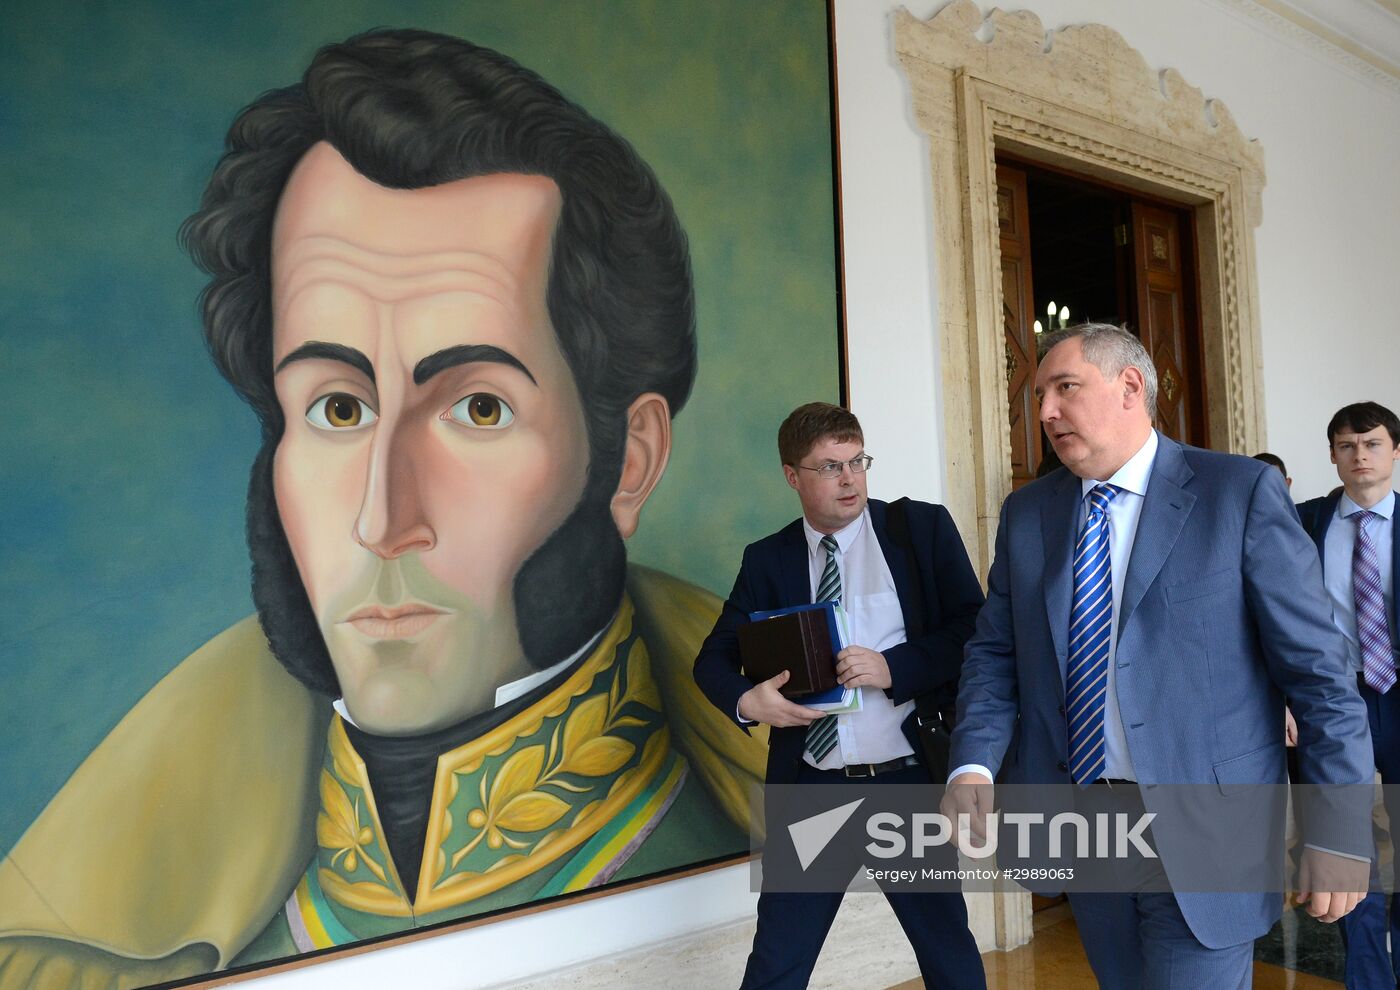 Deputy Prime Minister Dmitry Rogozin's visit to Venezuela